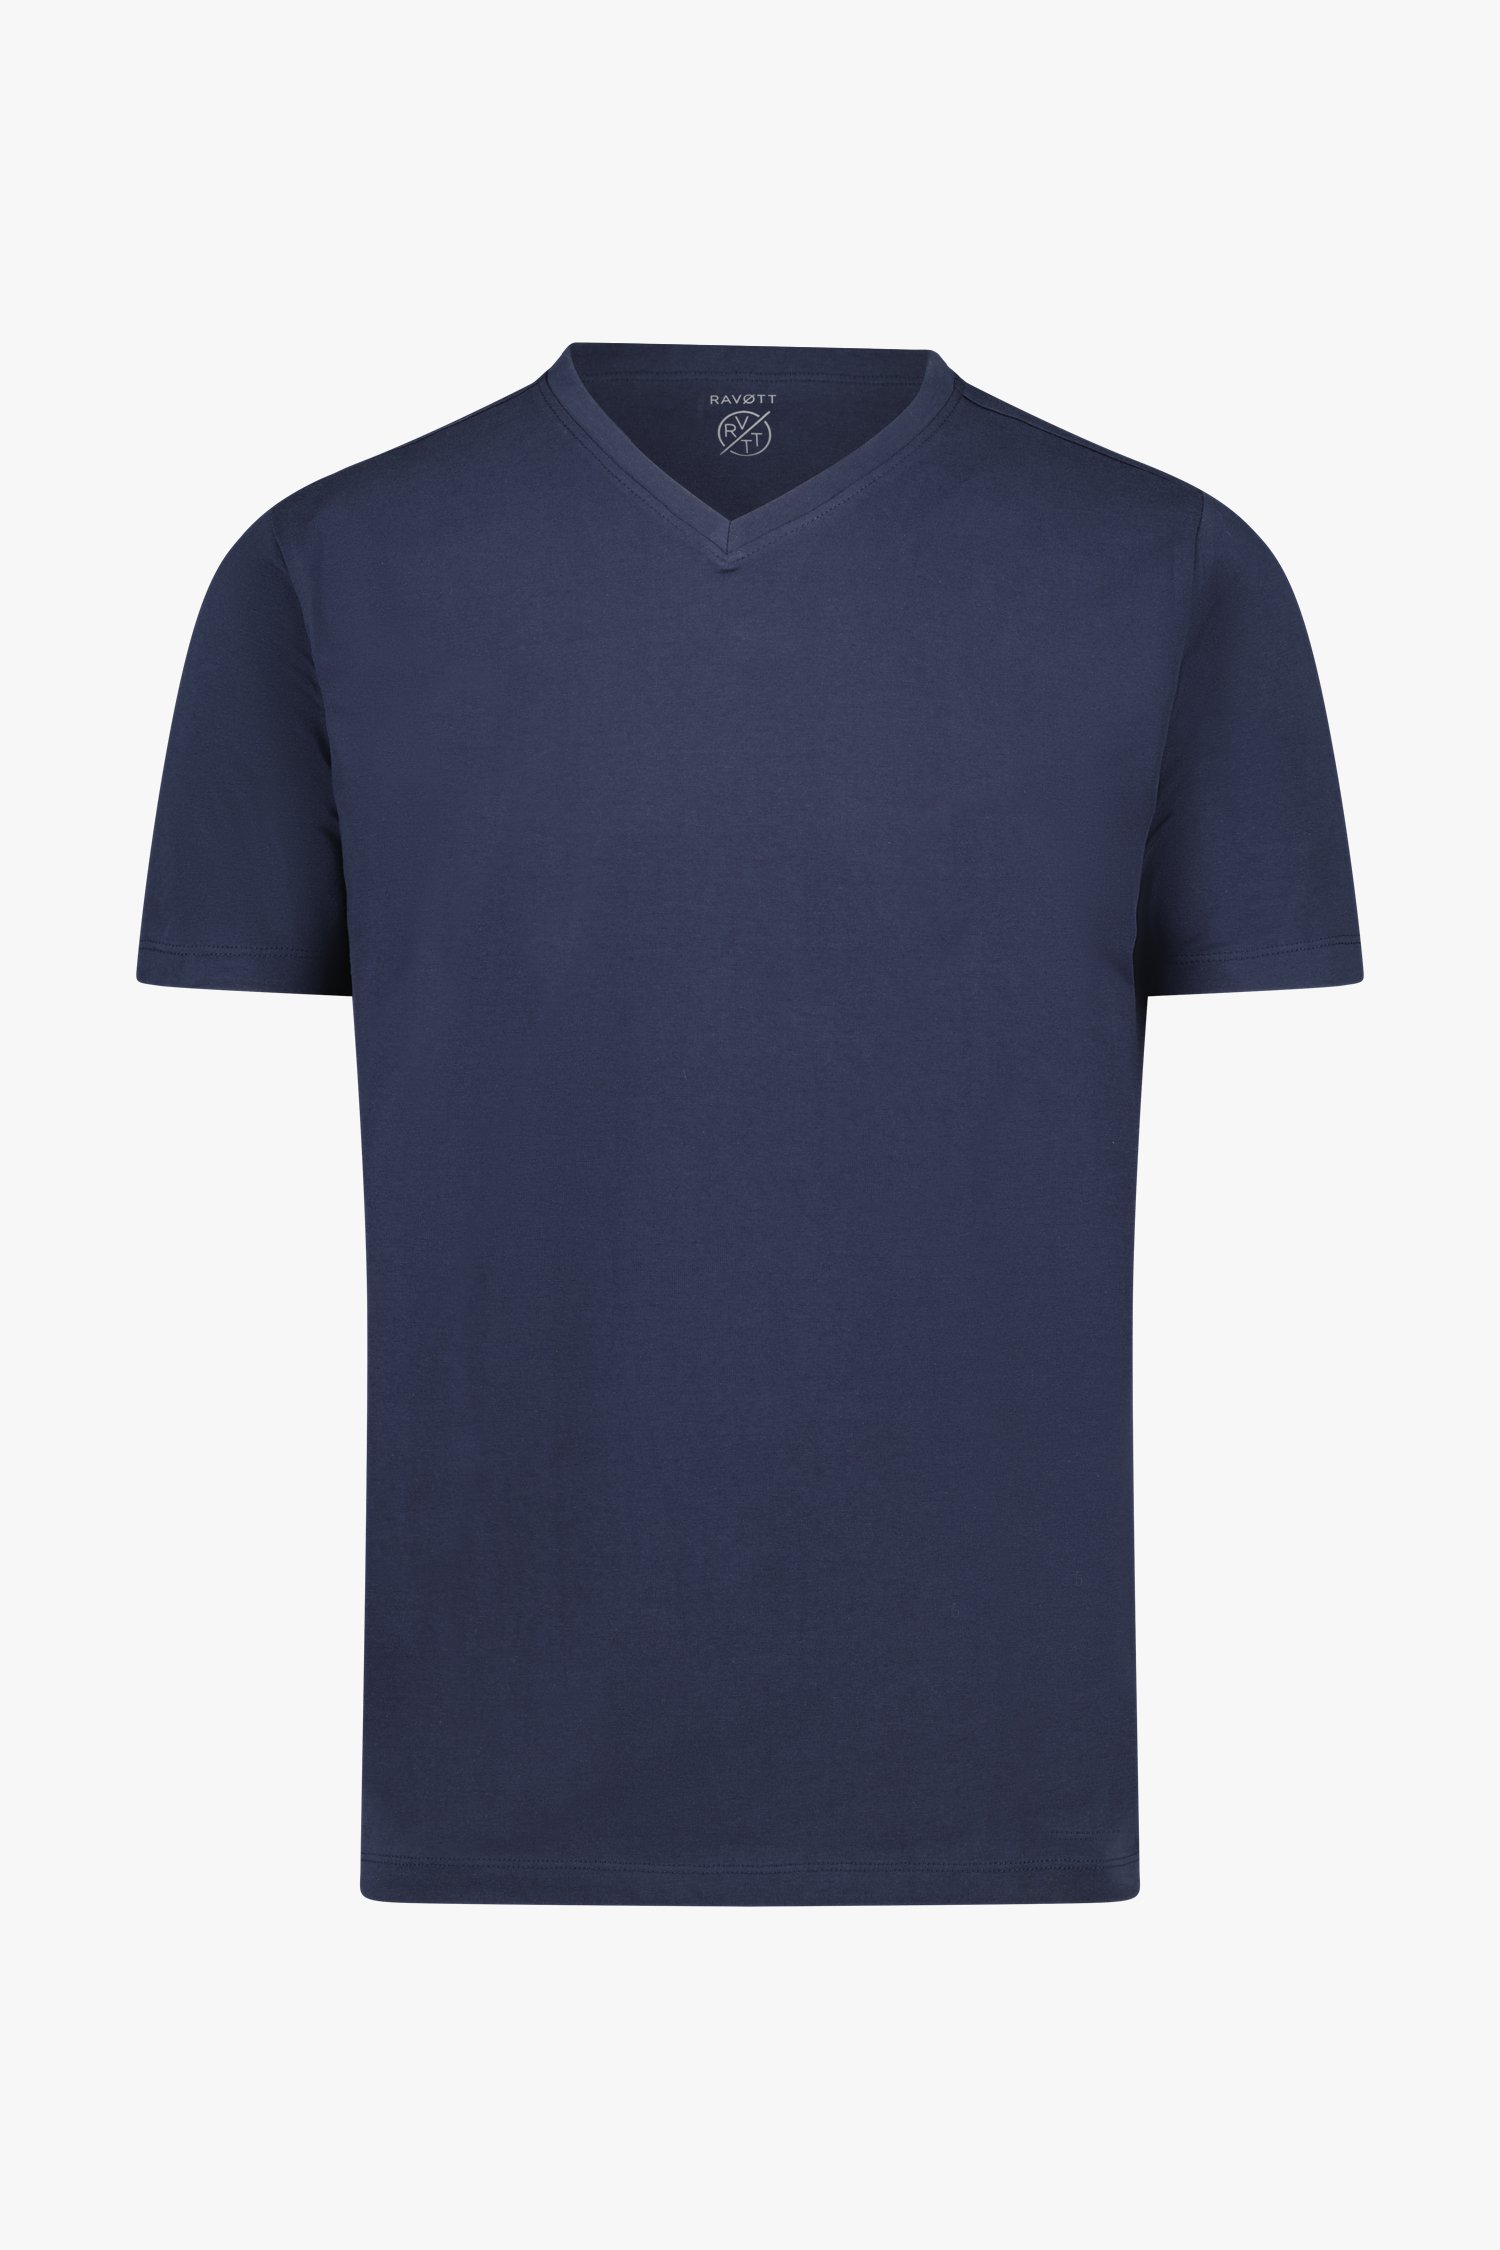 T-shirt en coton bleu marine avec col en V de Ravøtt pour Hommes